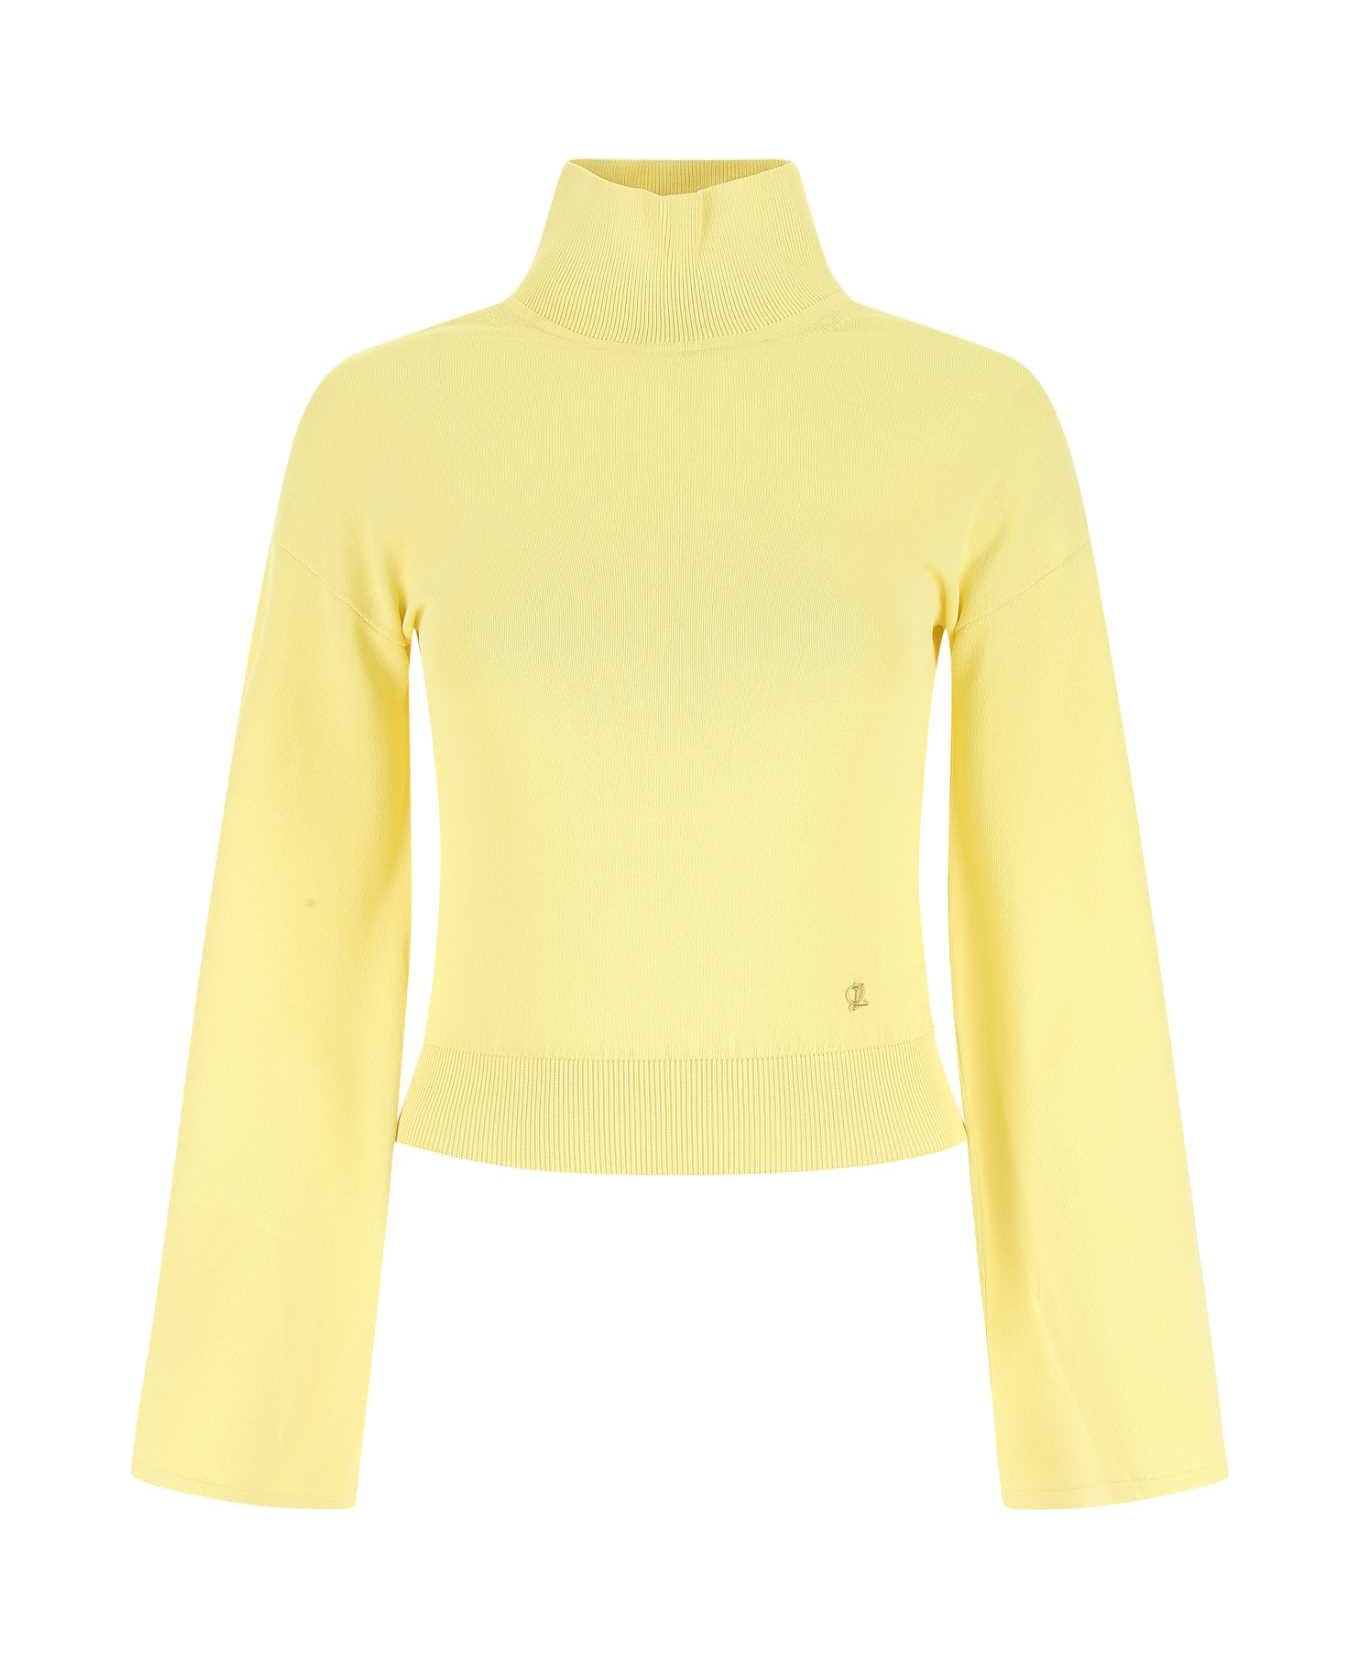 Loewe Pastel Yellow Stretch Viscose Blend Sweater - YELLOW